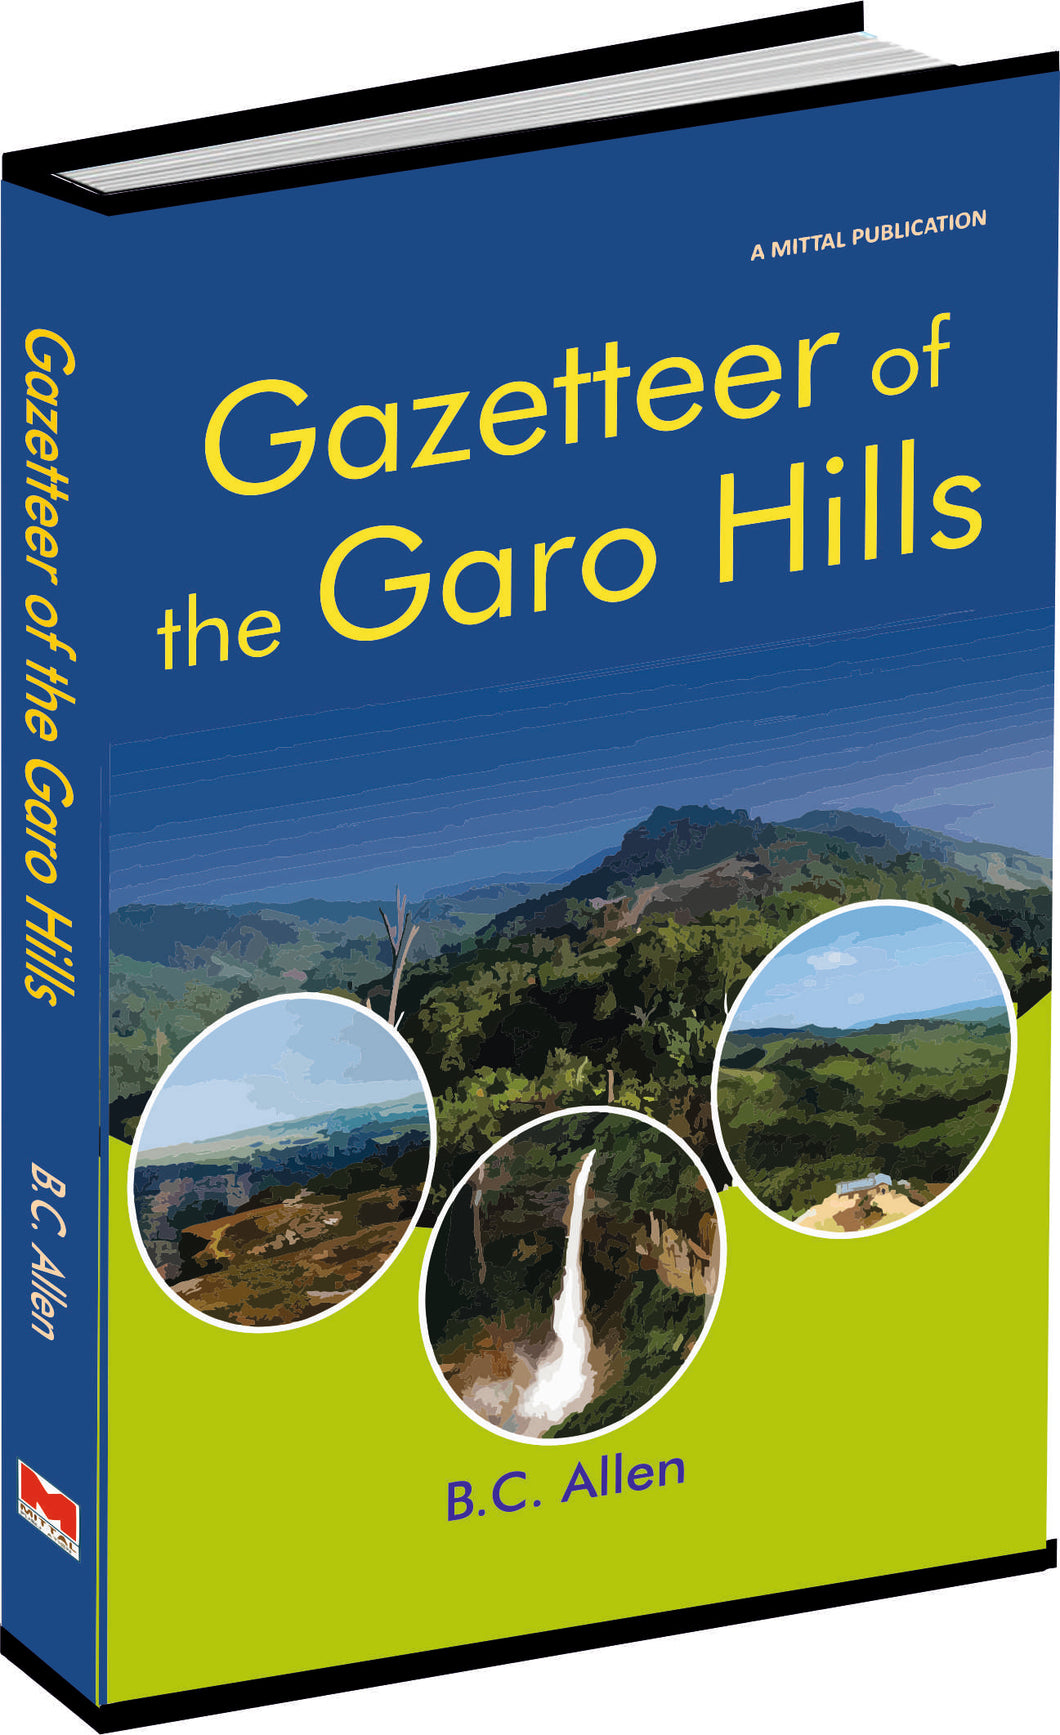 Gazetteer of the Garo Hills by B.C. Allen